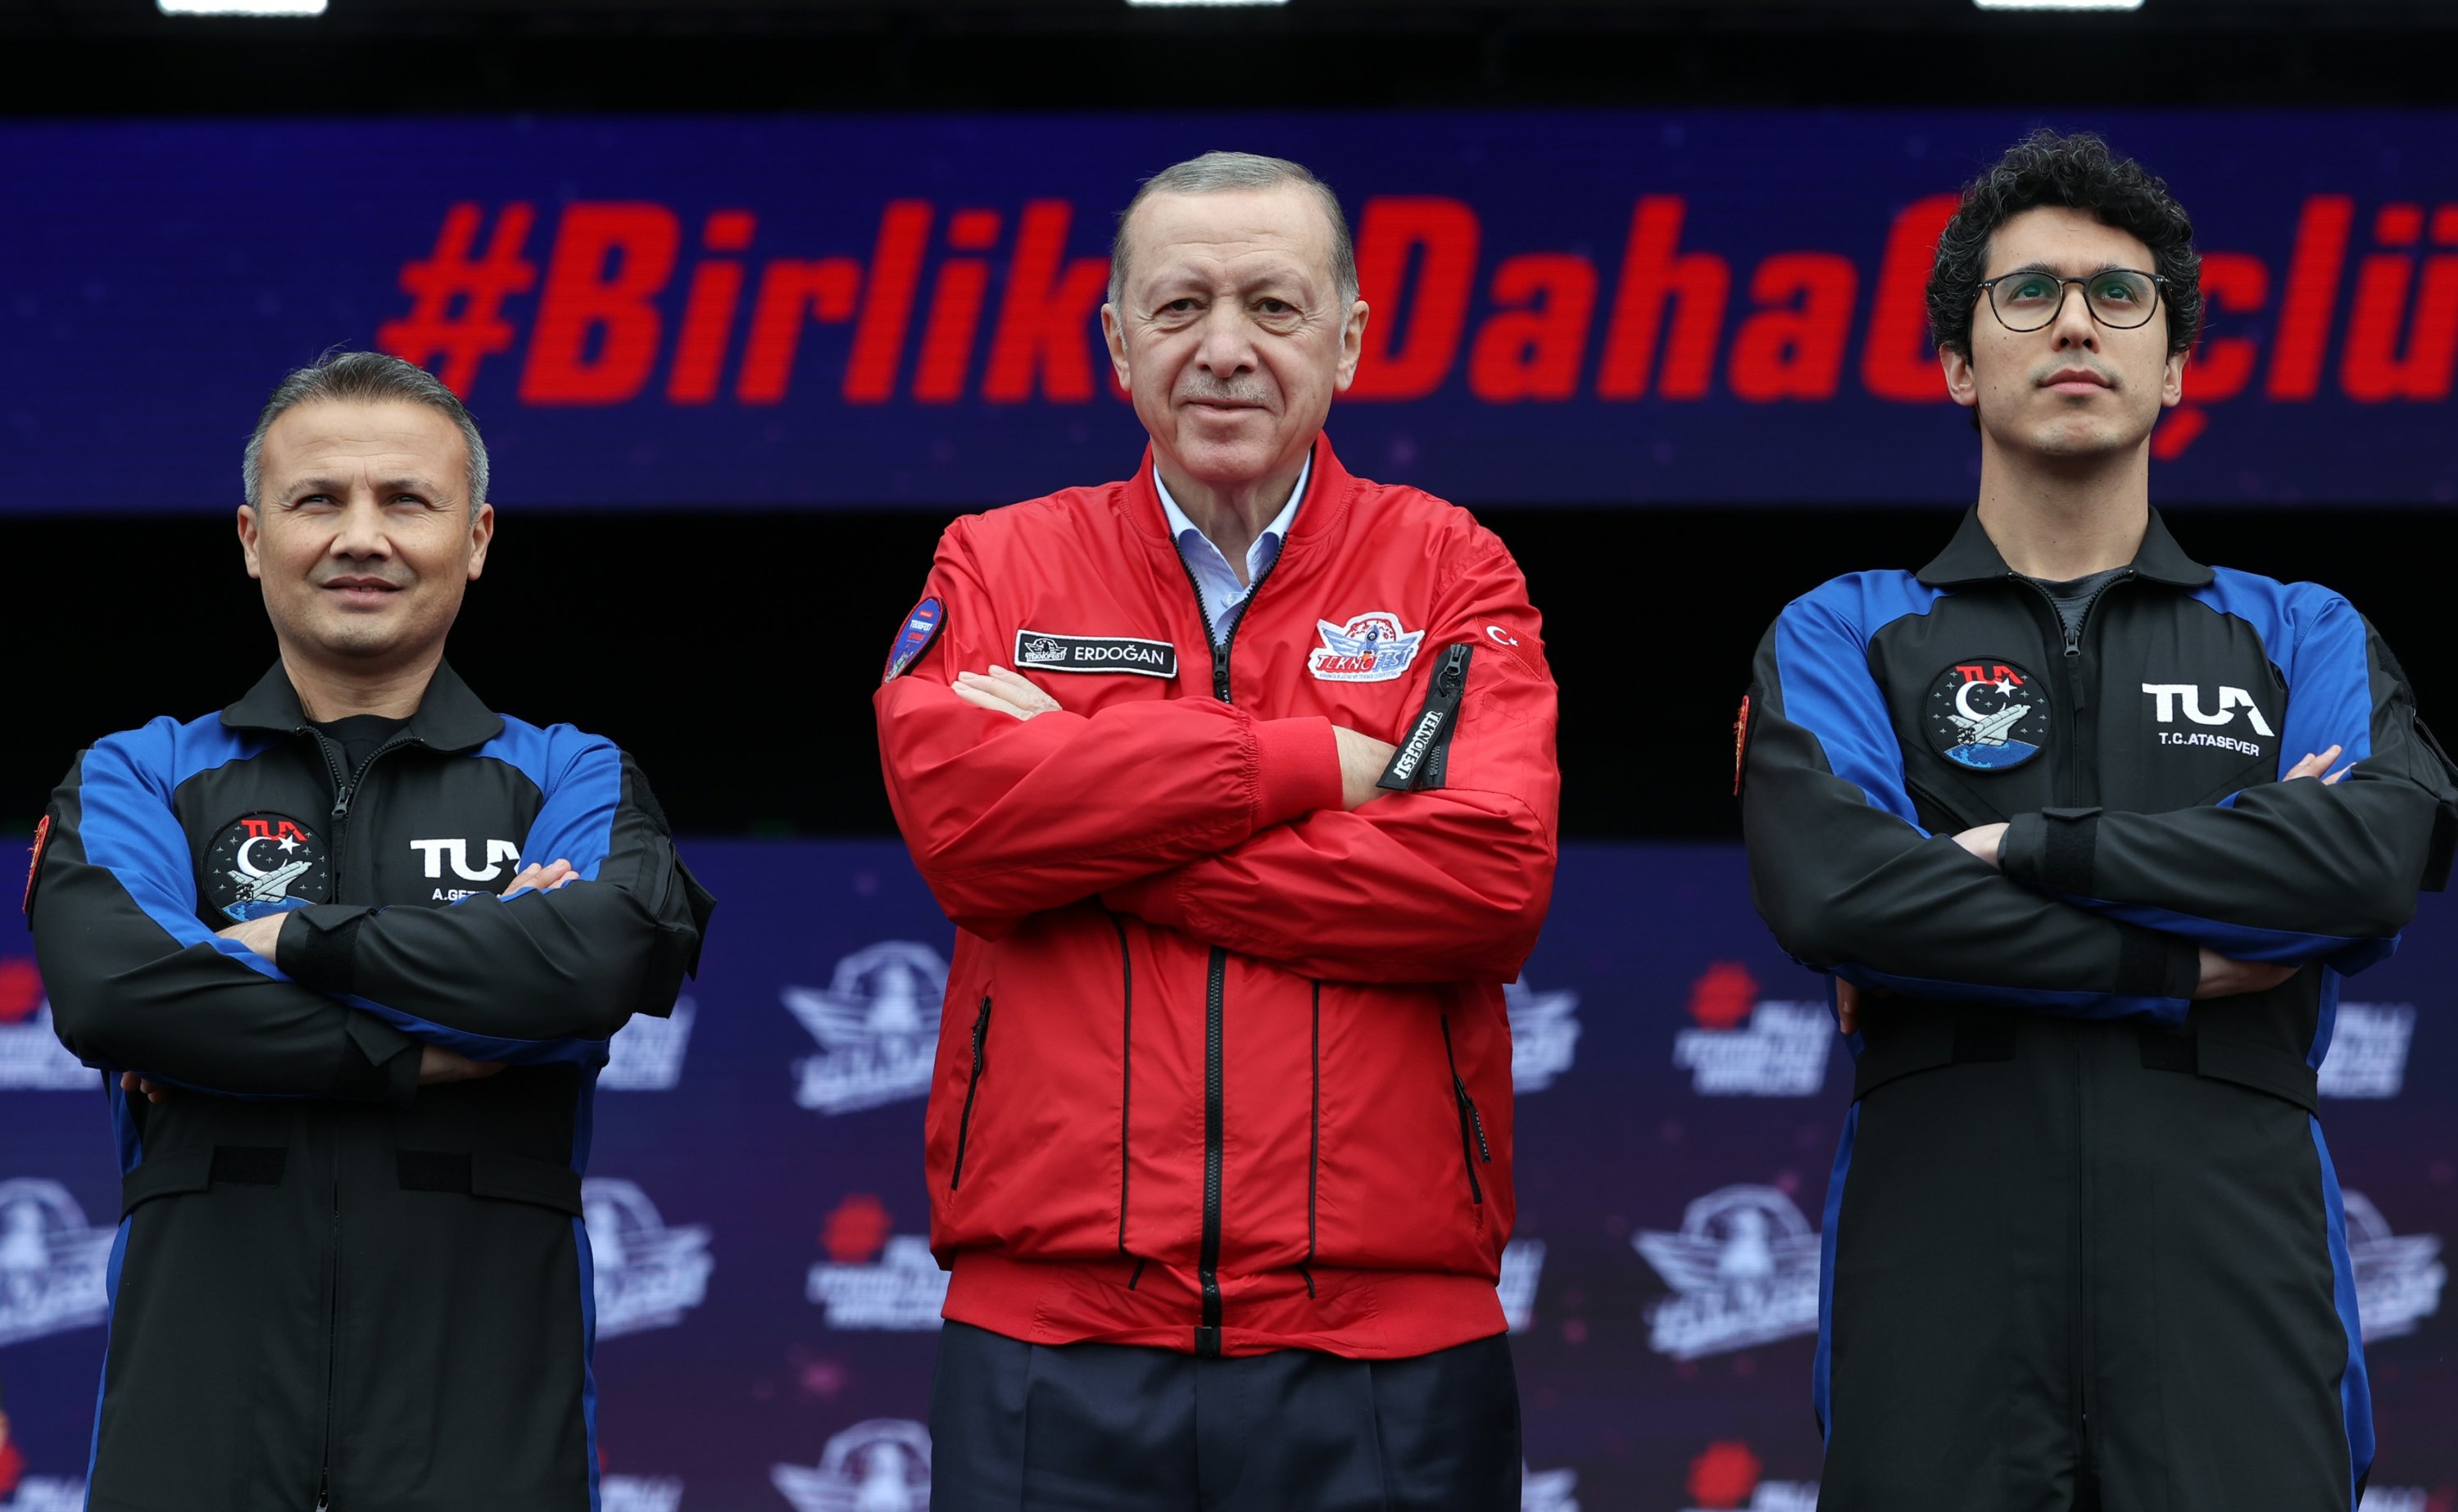 Launch in 2023: Erdoğan introduces Türkiye's 1st space travelers | Daily Sabah